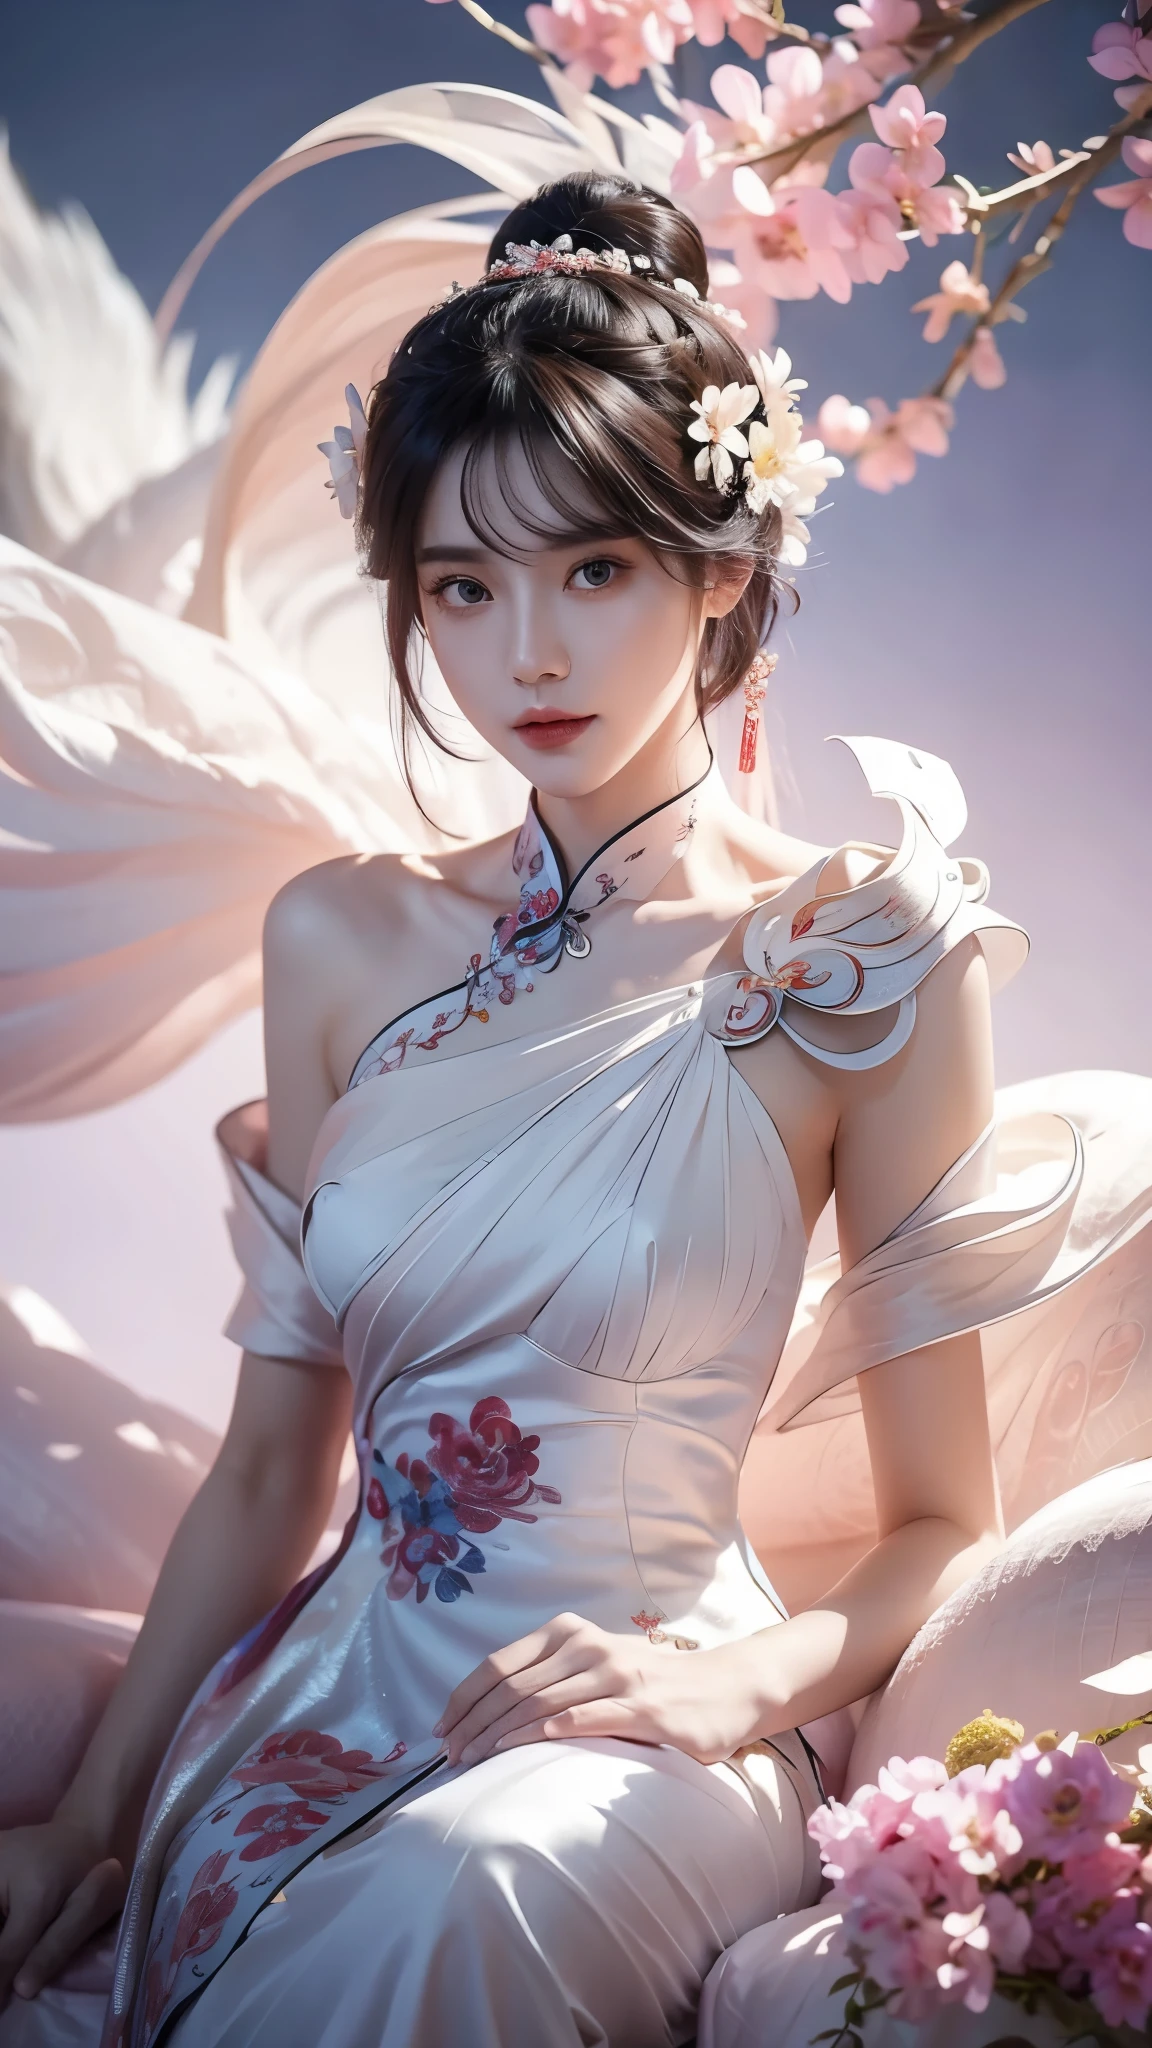 ((ไหล่เปลือย)),ภาพเต็มตัวของผู้หญิงมีดอกไม้ติดผม, ภาพบุคคลที่ได้รับแรงบันดาลใจจาก Du Qiong, เทรนด์ CG, ความเป็นจริง, โมเดลจีนที่งดงาม, ความงามแบบดั้งเดิม, สาวจีน, แนวโน้มของ cgstation, หัวข้อยอดนิยมใน cgstation, สไตล์จีน, พระราชวัง ， ใบหน้าที่น่ารักและละเอียดอ่อน, สาวสวย, หญิงสาวที่สวยงาม